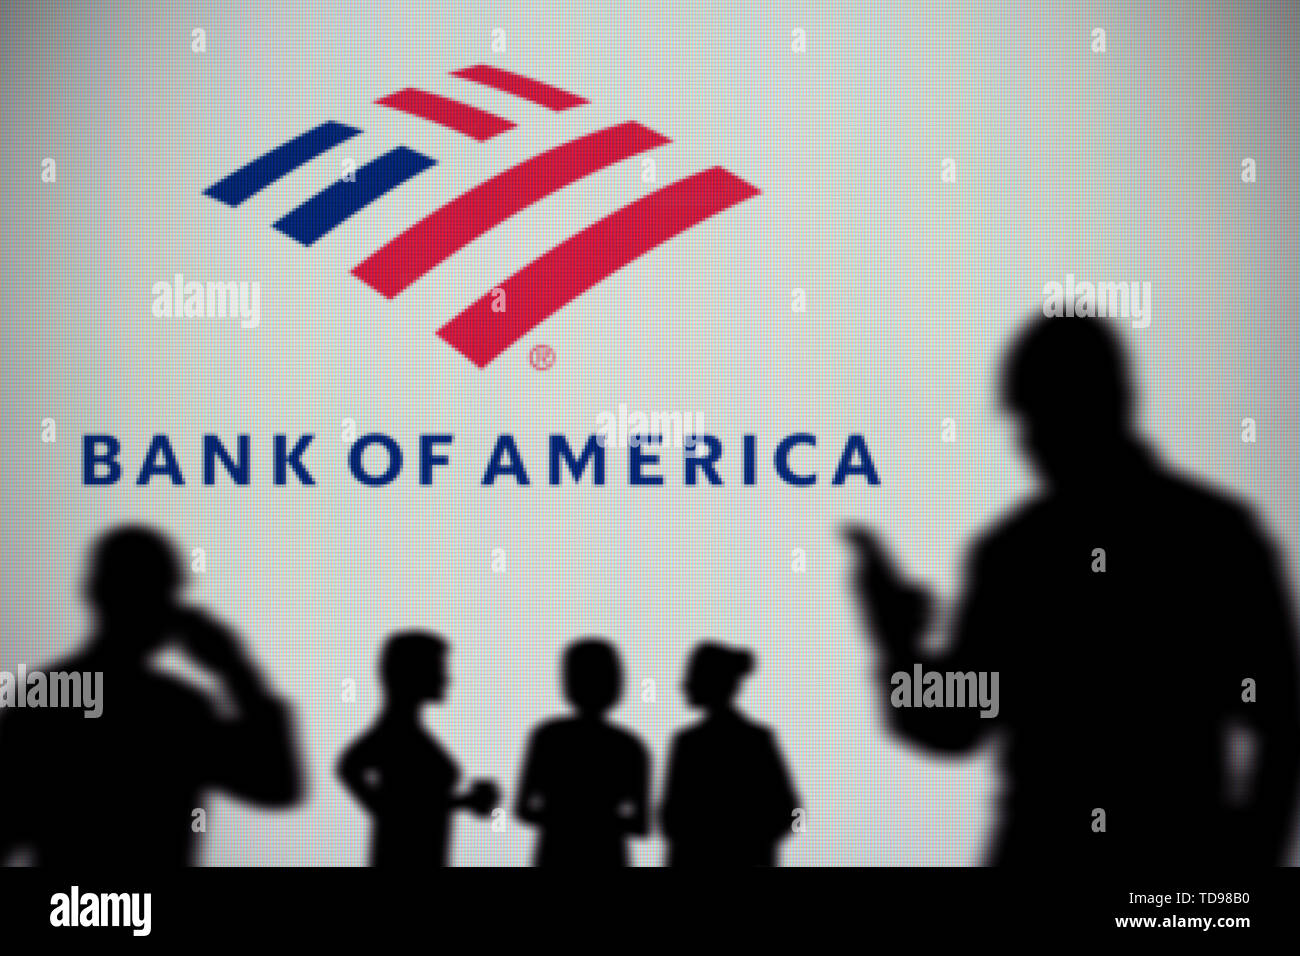 La Bank of America il logo è visibile su uno schermo a LED in background mentre si profila una persona utilizza uno smartphone in primo piano (solo uso editoriale Foto Stock